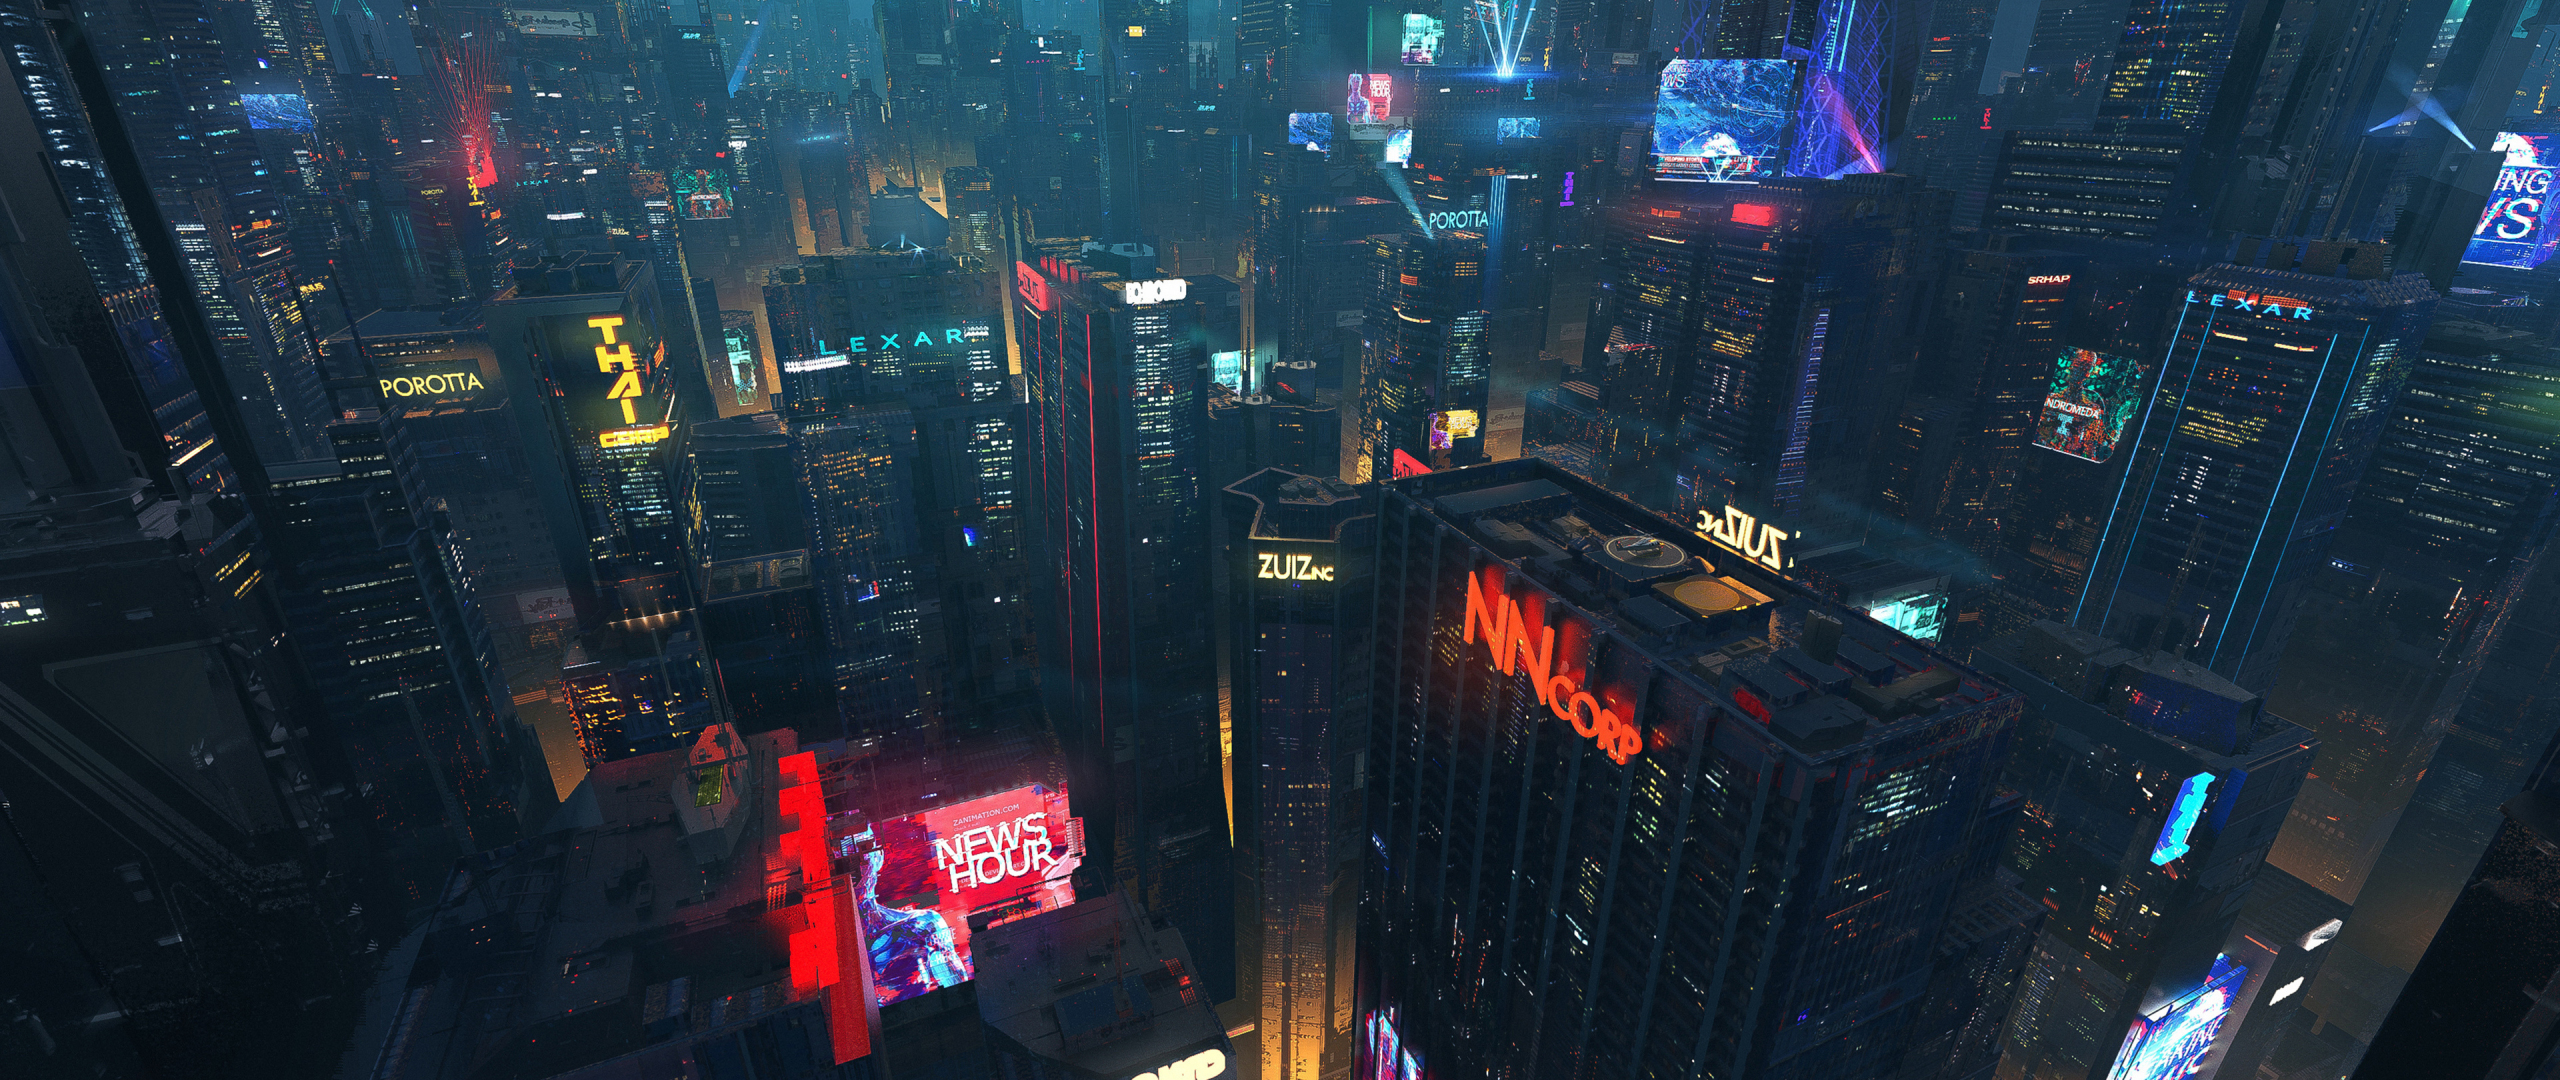 Download Cityscape, futuristic city, night, buildings, dark 2560x1080 wallp...